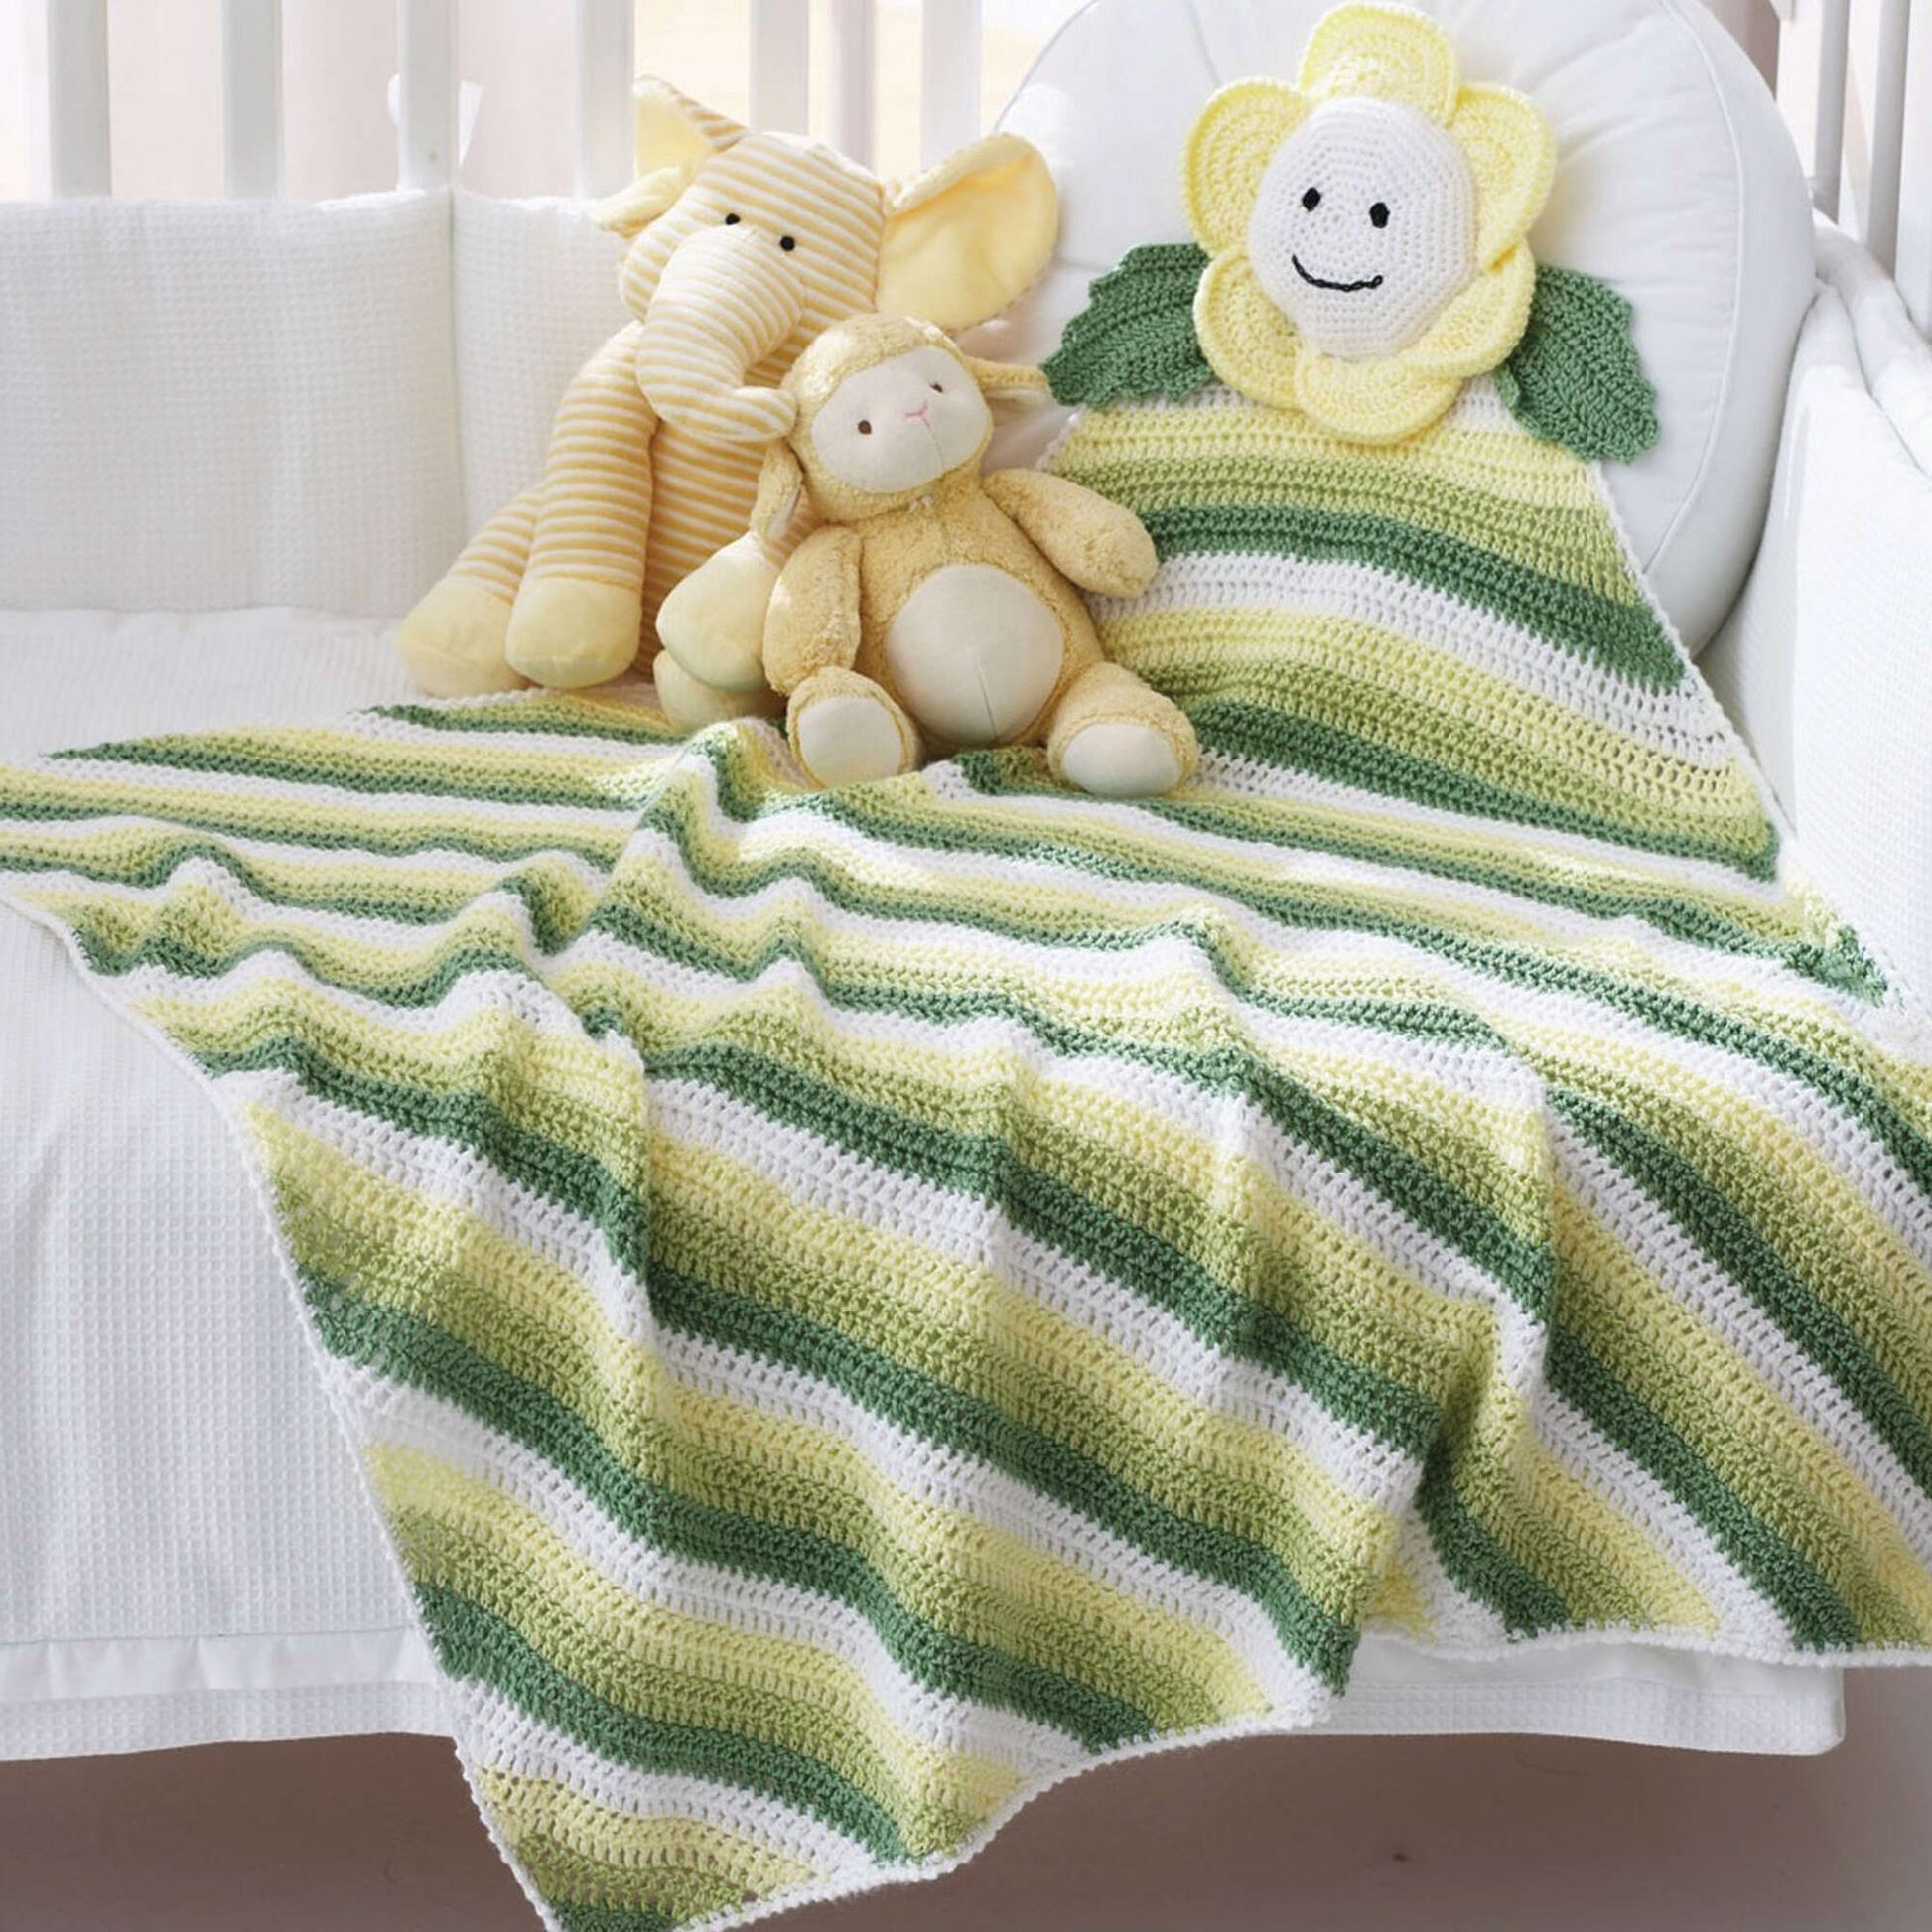 Free Bernat Daisy Crochet Blanket Pattern